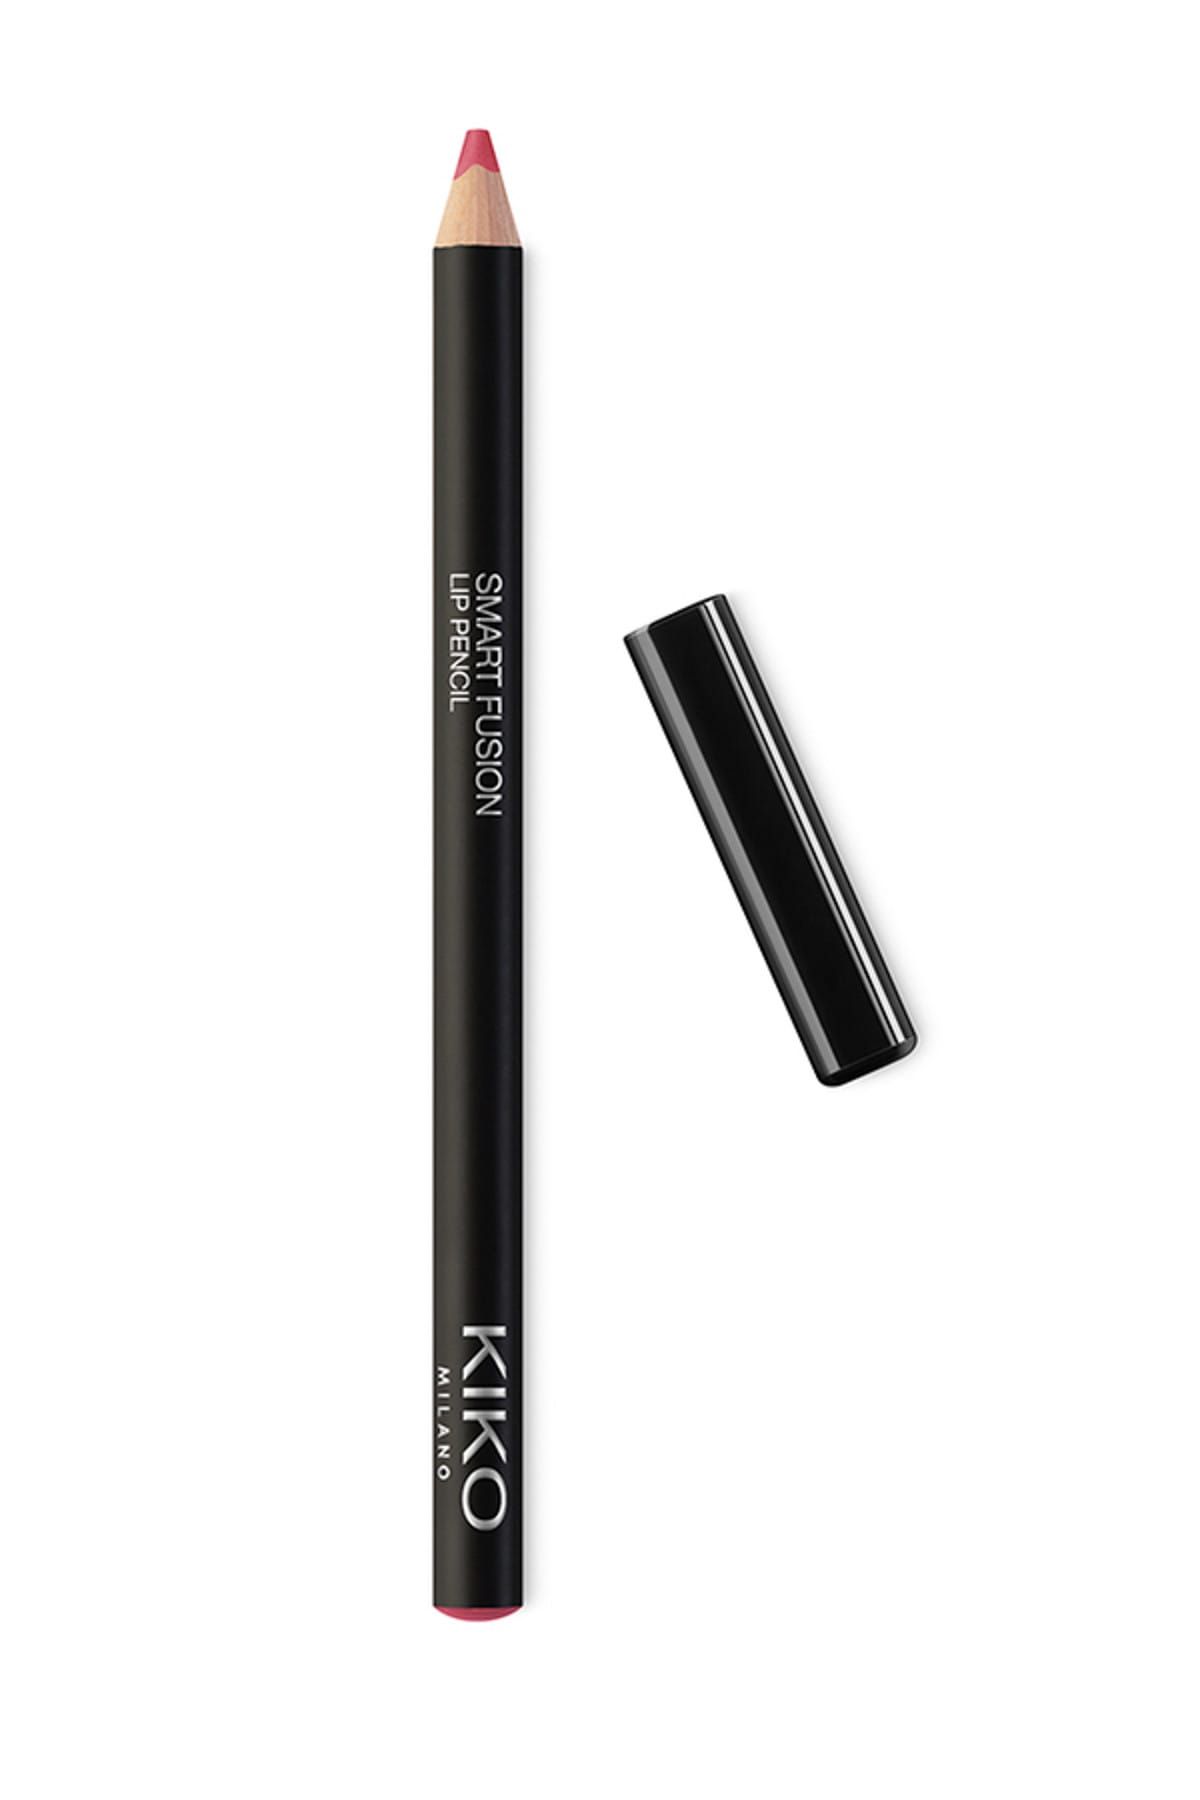 KIKO مداد لب Smart Fusion بافت نرم و روان شماره ۵۰۷ رنگ رز چوبی